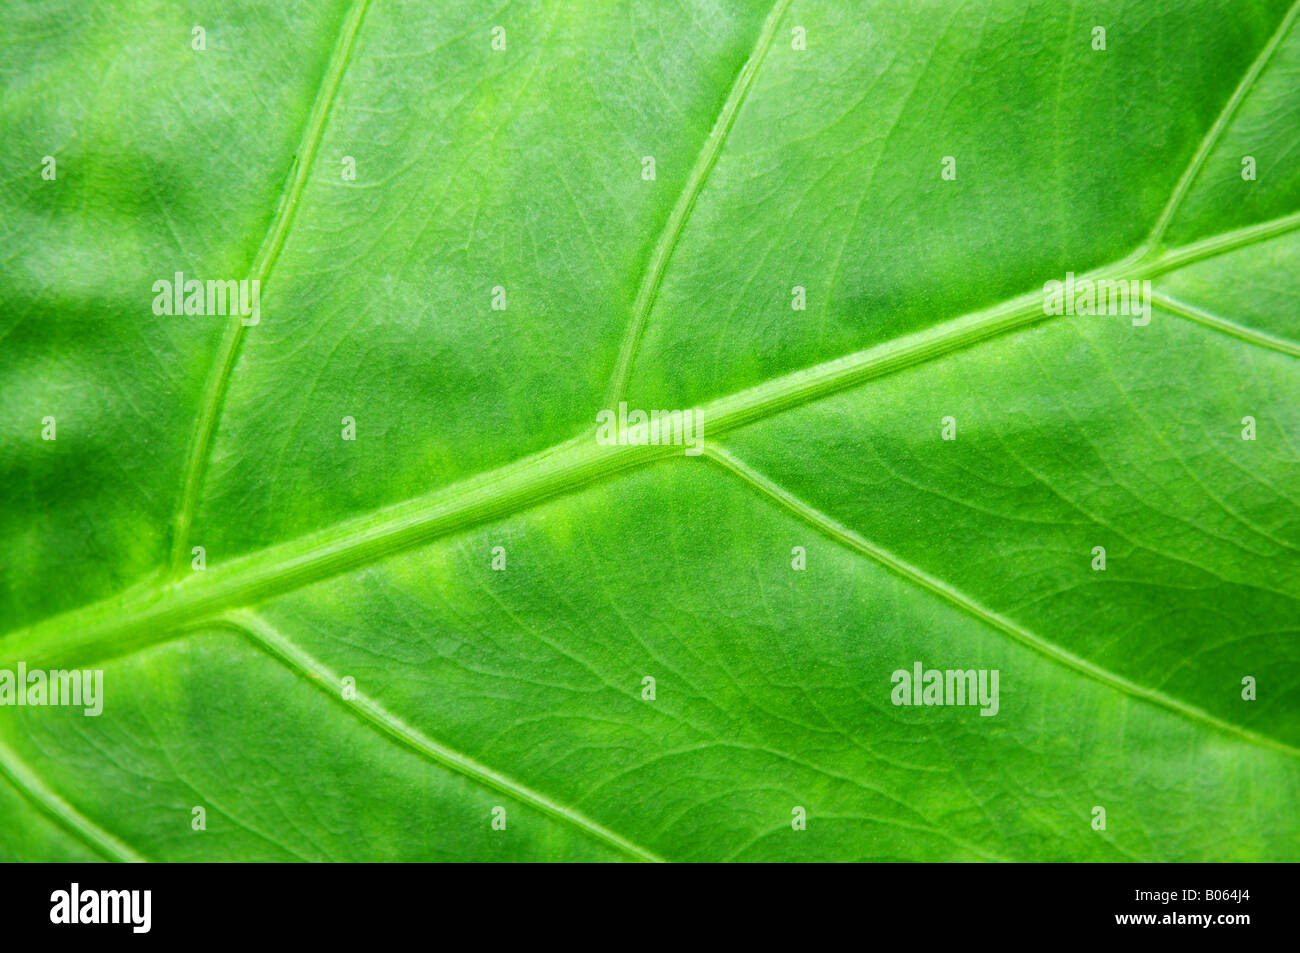 Résumé fond botanique des plantes tropicales de feuille verte Banque D'Images